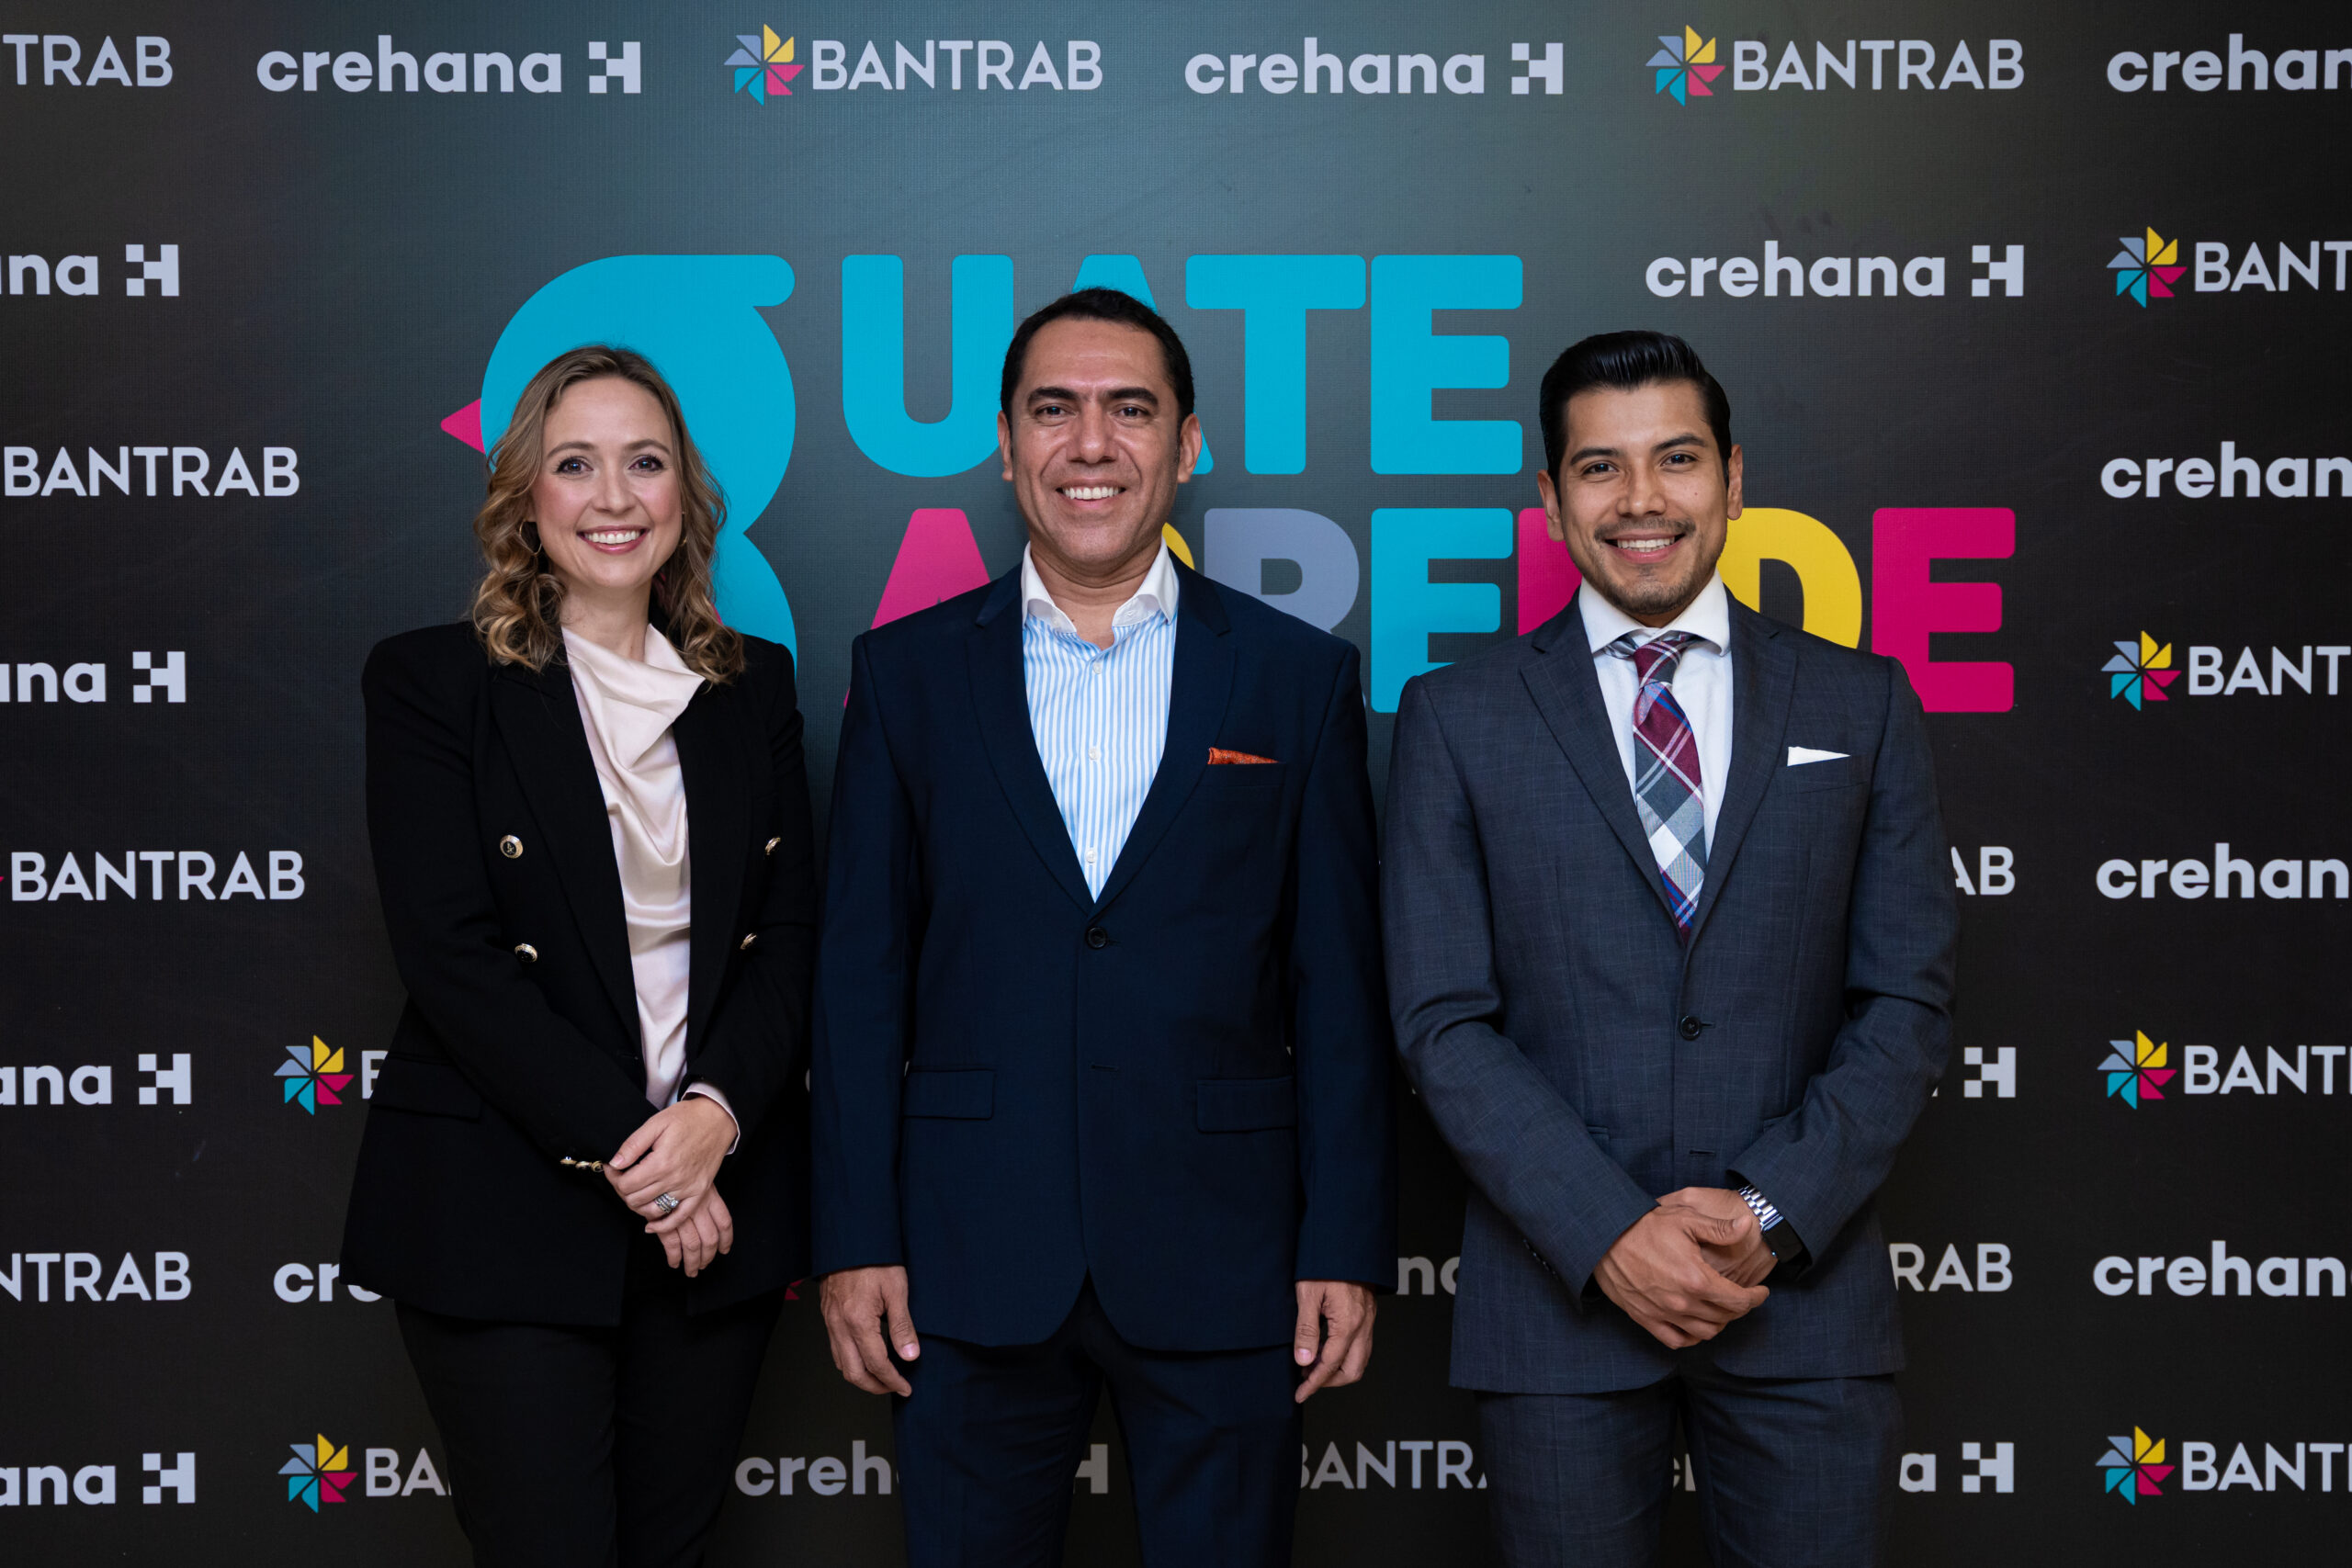 Bantrab presenta GuateAprende, su nueva plataforma educativa desarrollada junto con Crehana